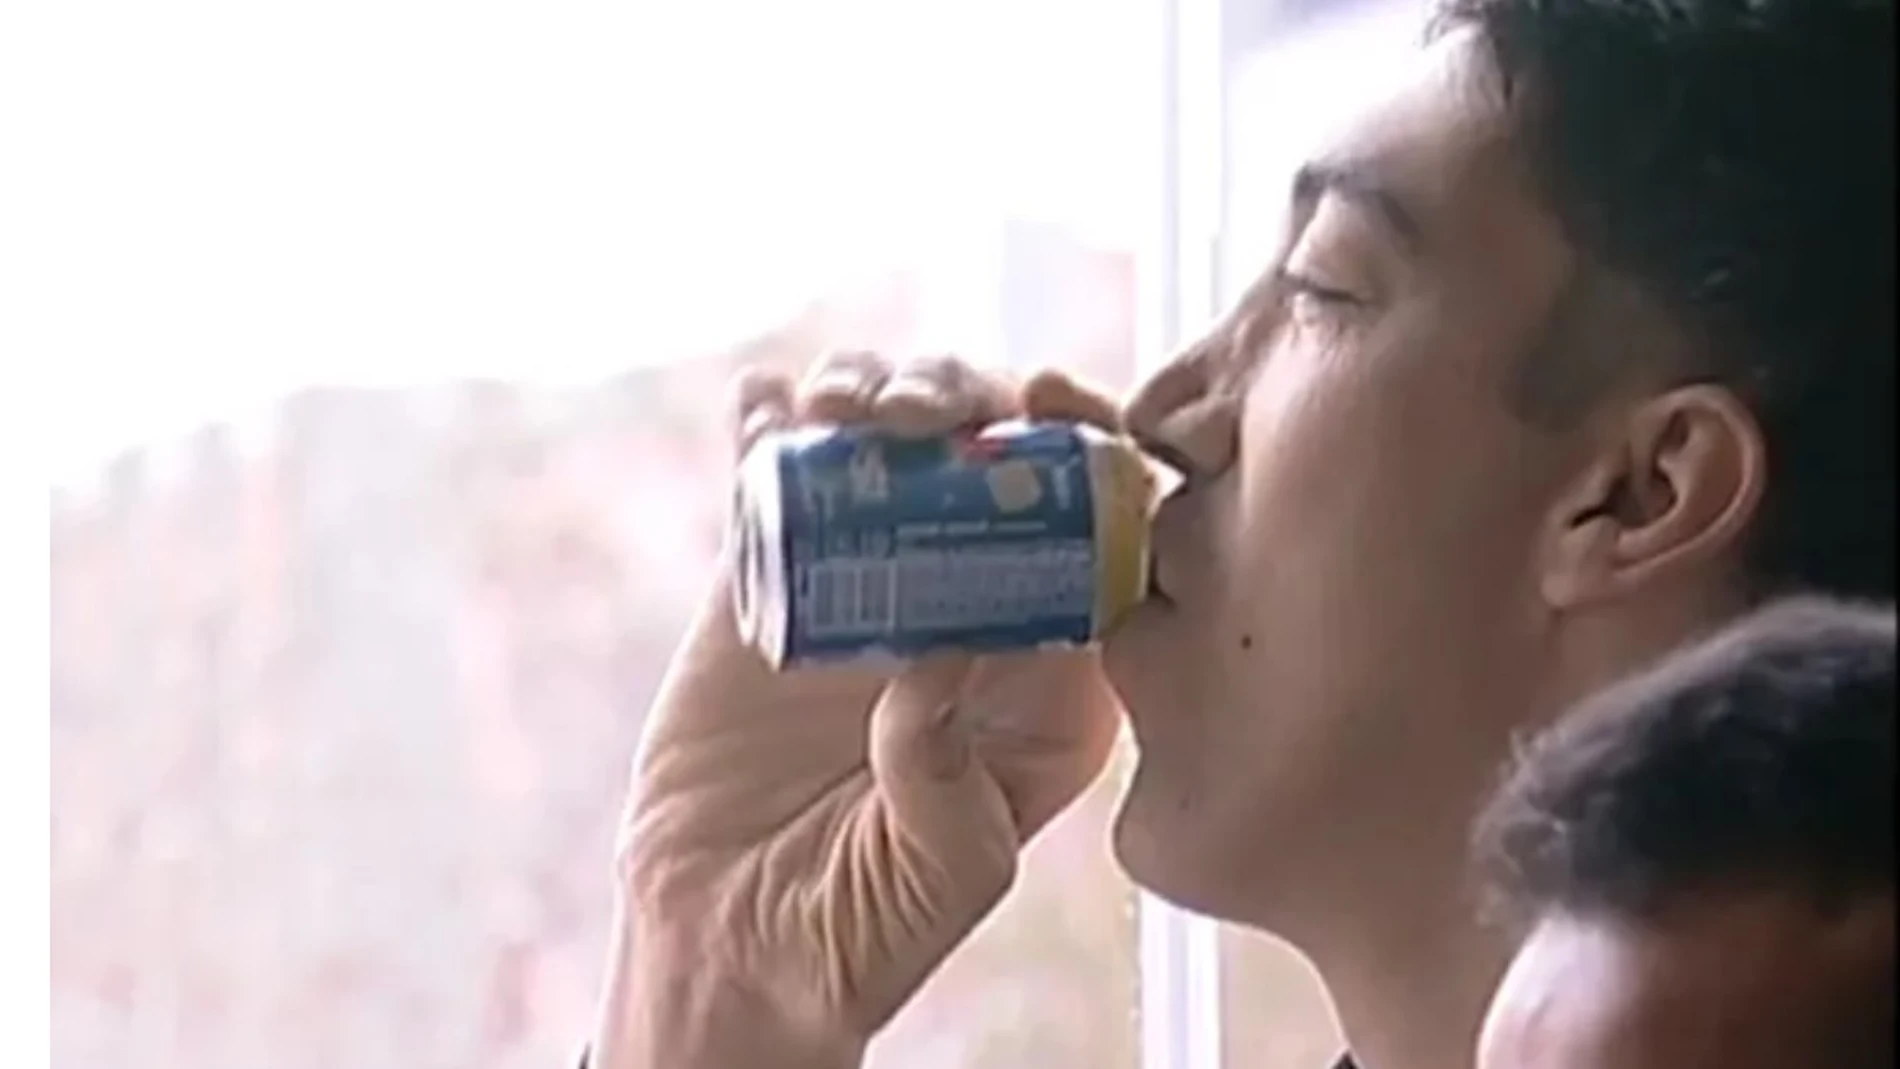 Sultan Kosen bebiendo de una lata de 330 ml | Guinness World Record